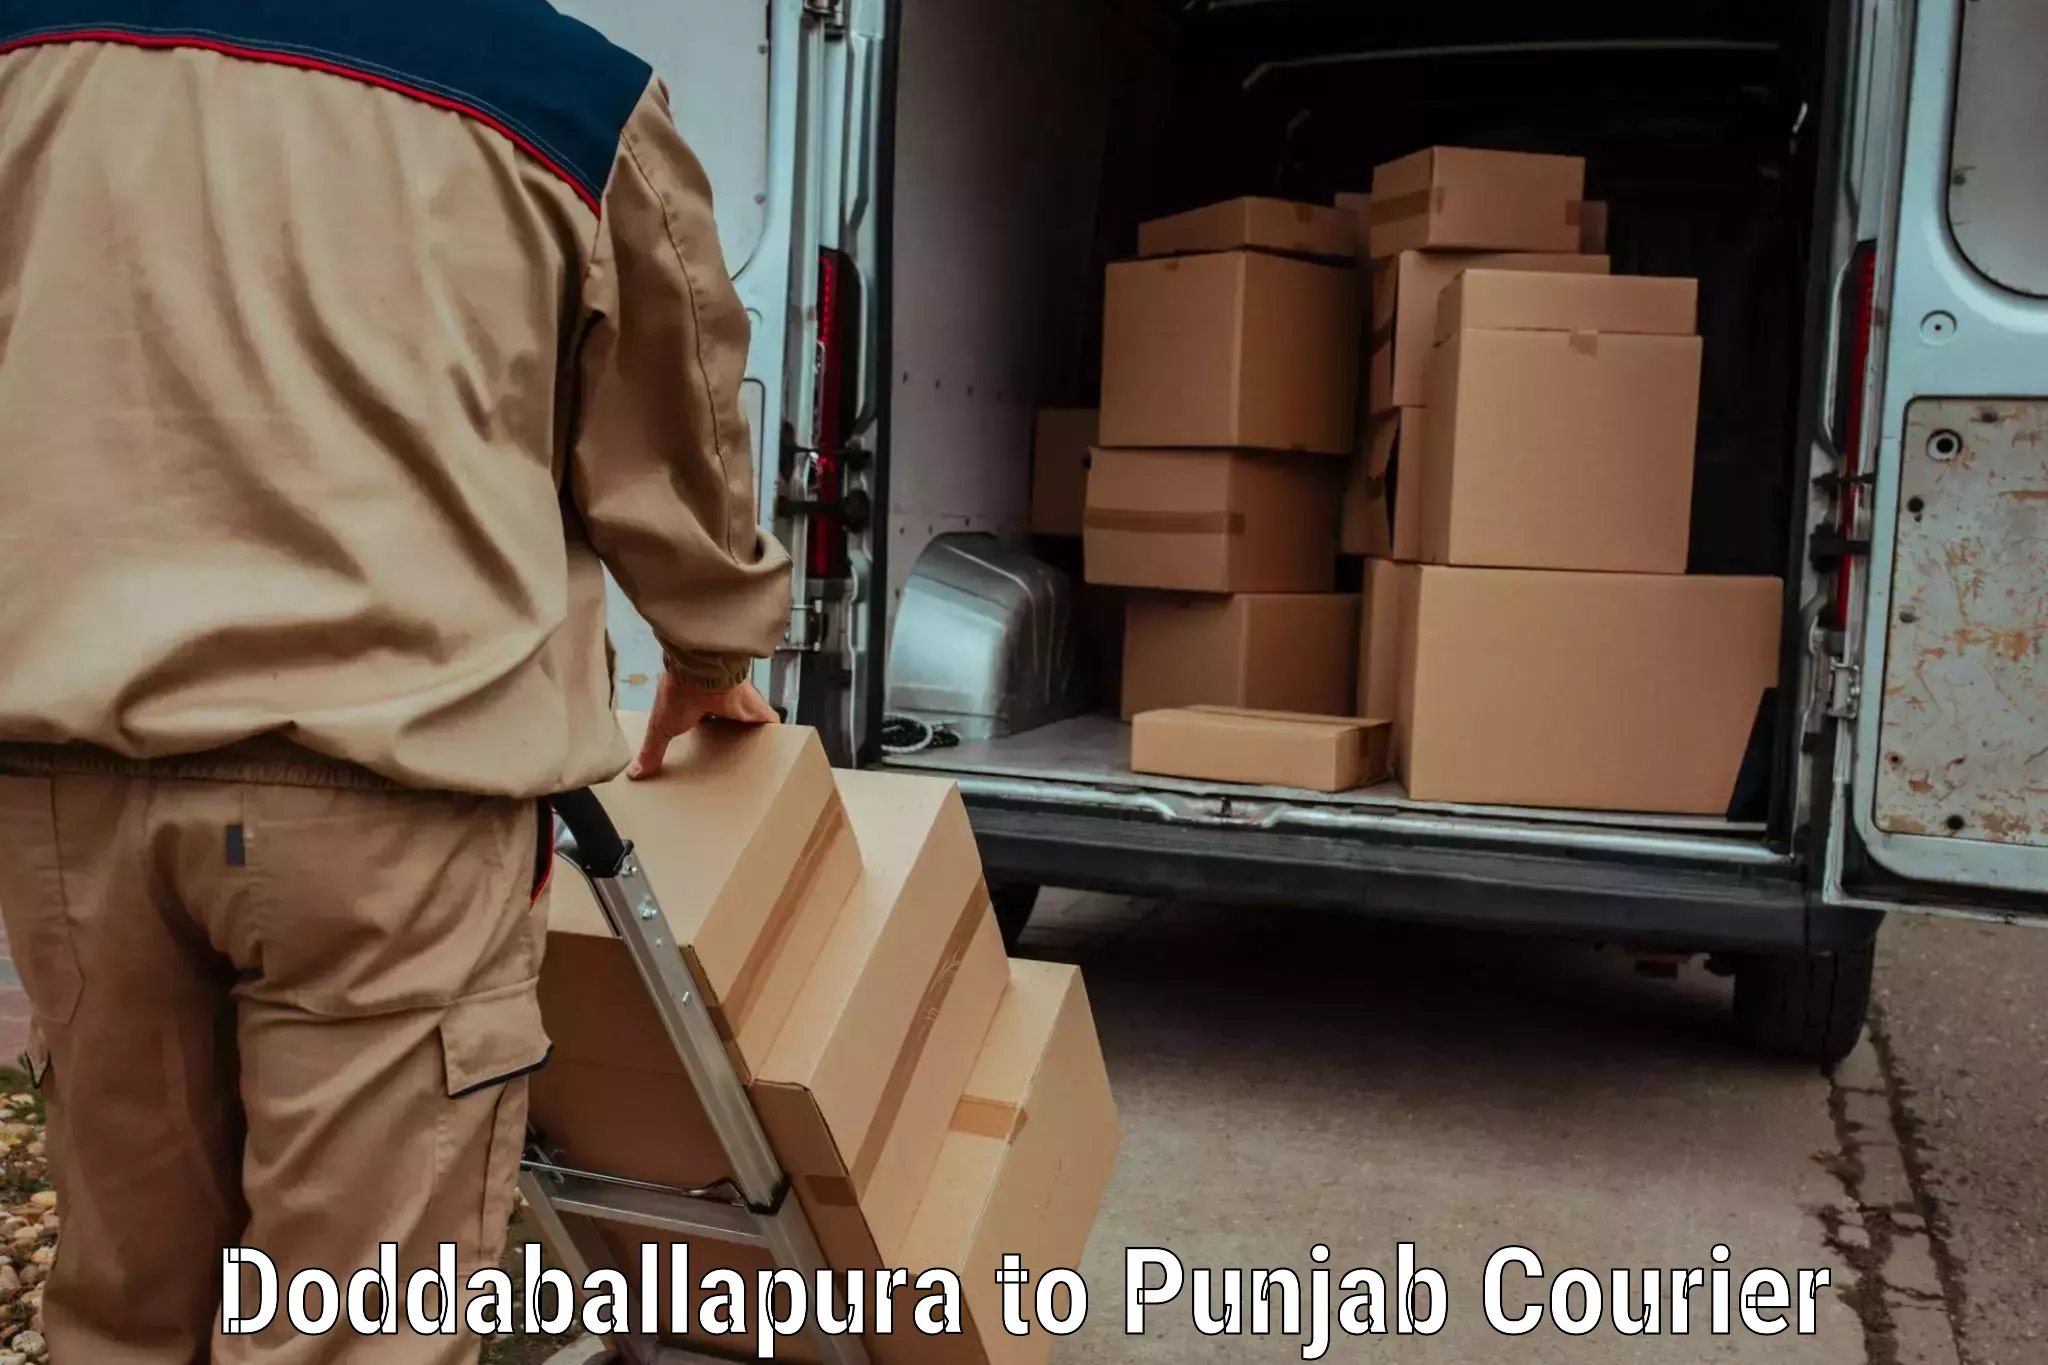 Urgent luggage shipment Doddaballapura to Punjab